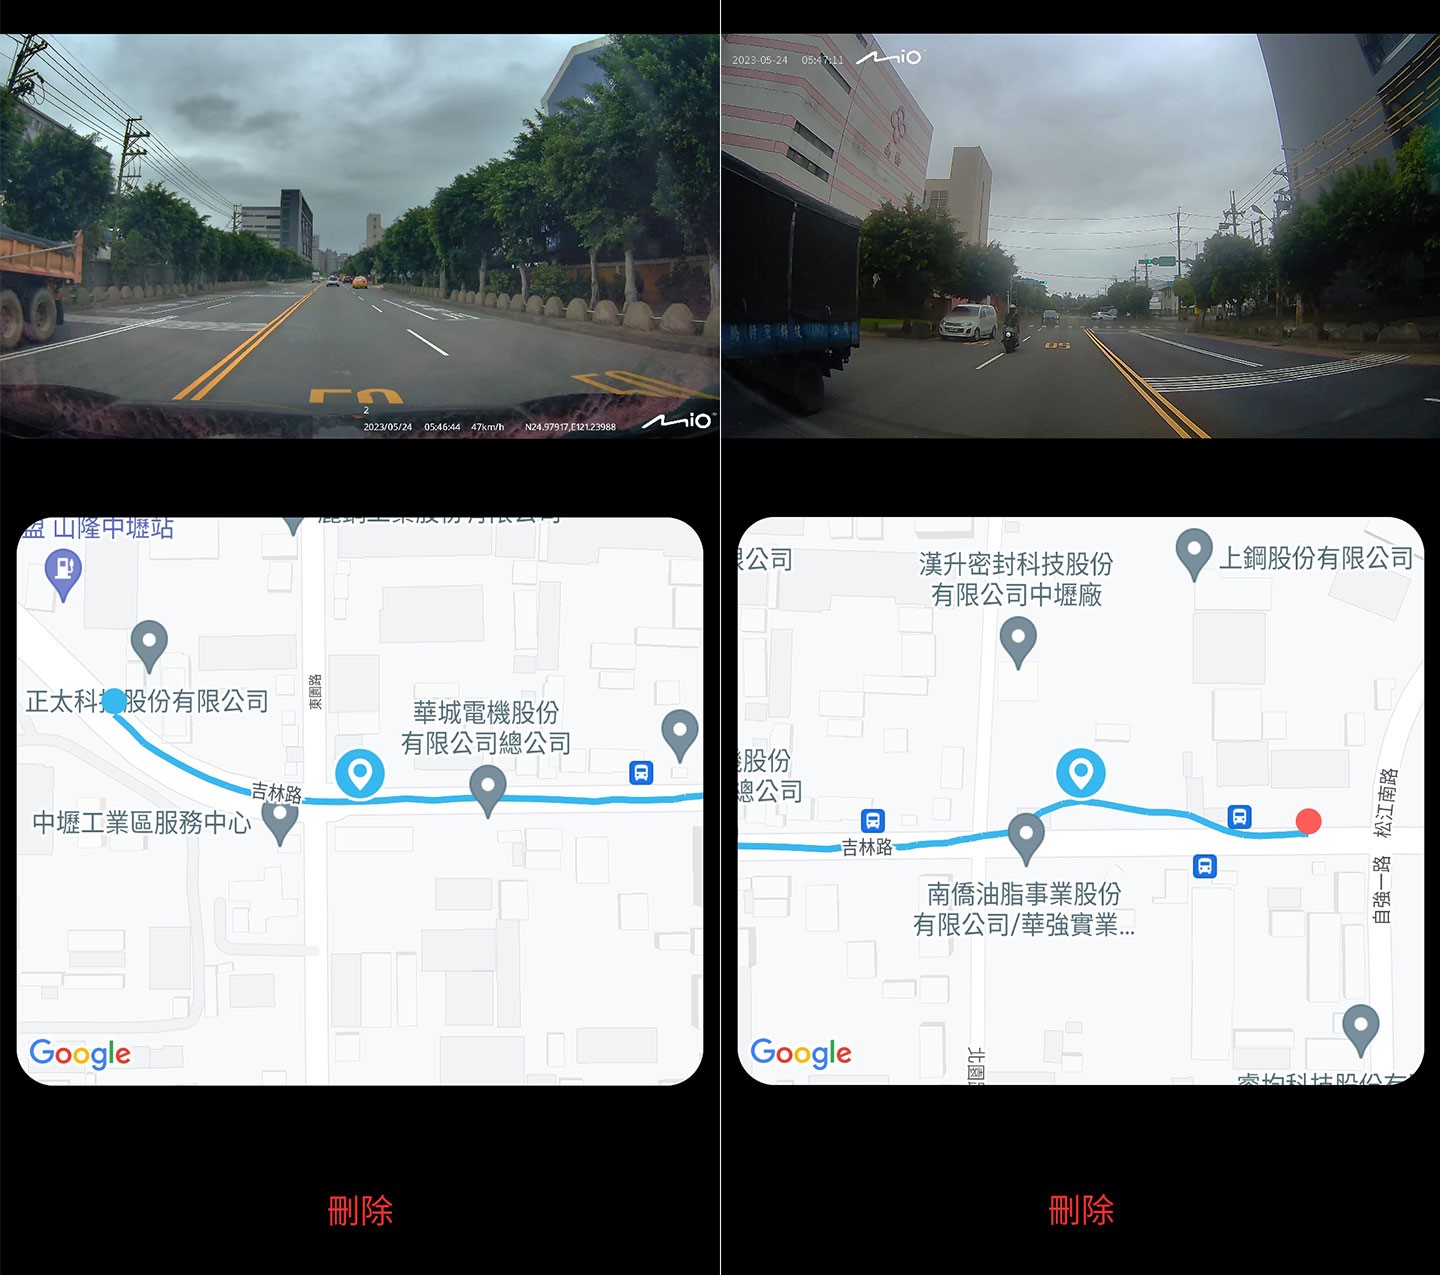 在手機端 MiVue Pro 瀏覽下載的影像，畫面下方會同顯示行車 GPS 路徑軌徑，這個功能對於了解車輛行進方位提供很大的幫助。